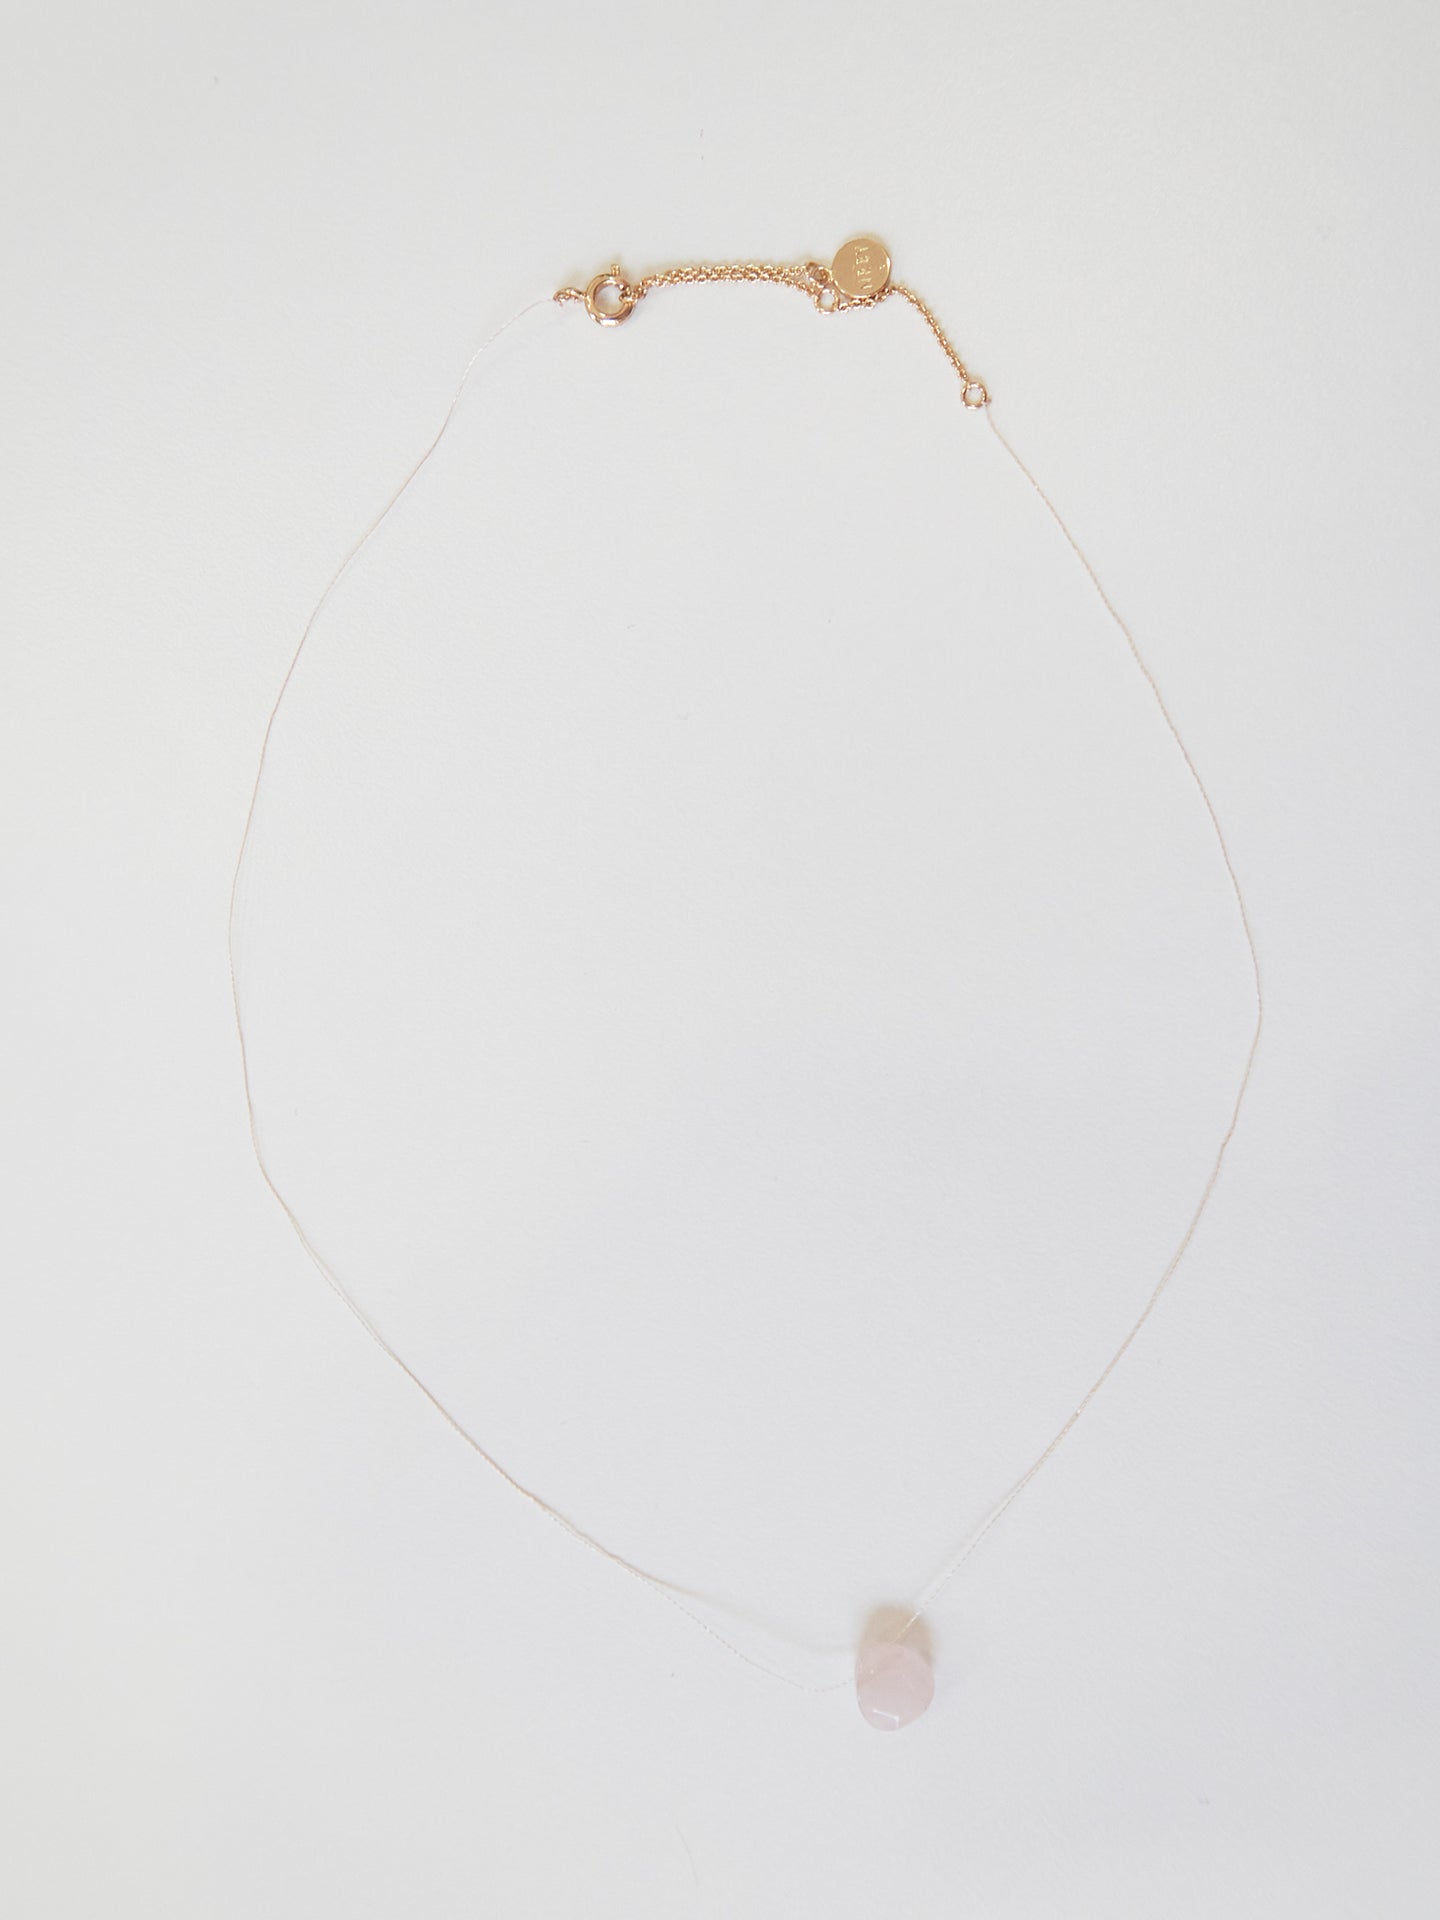 Silk thread necklace with rose quartz